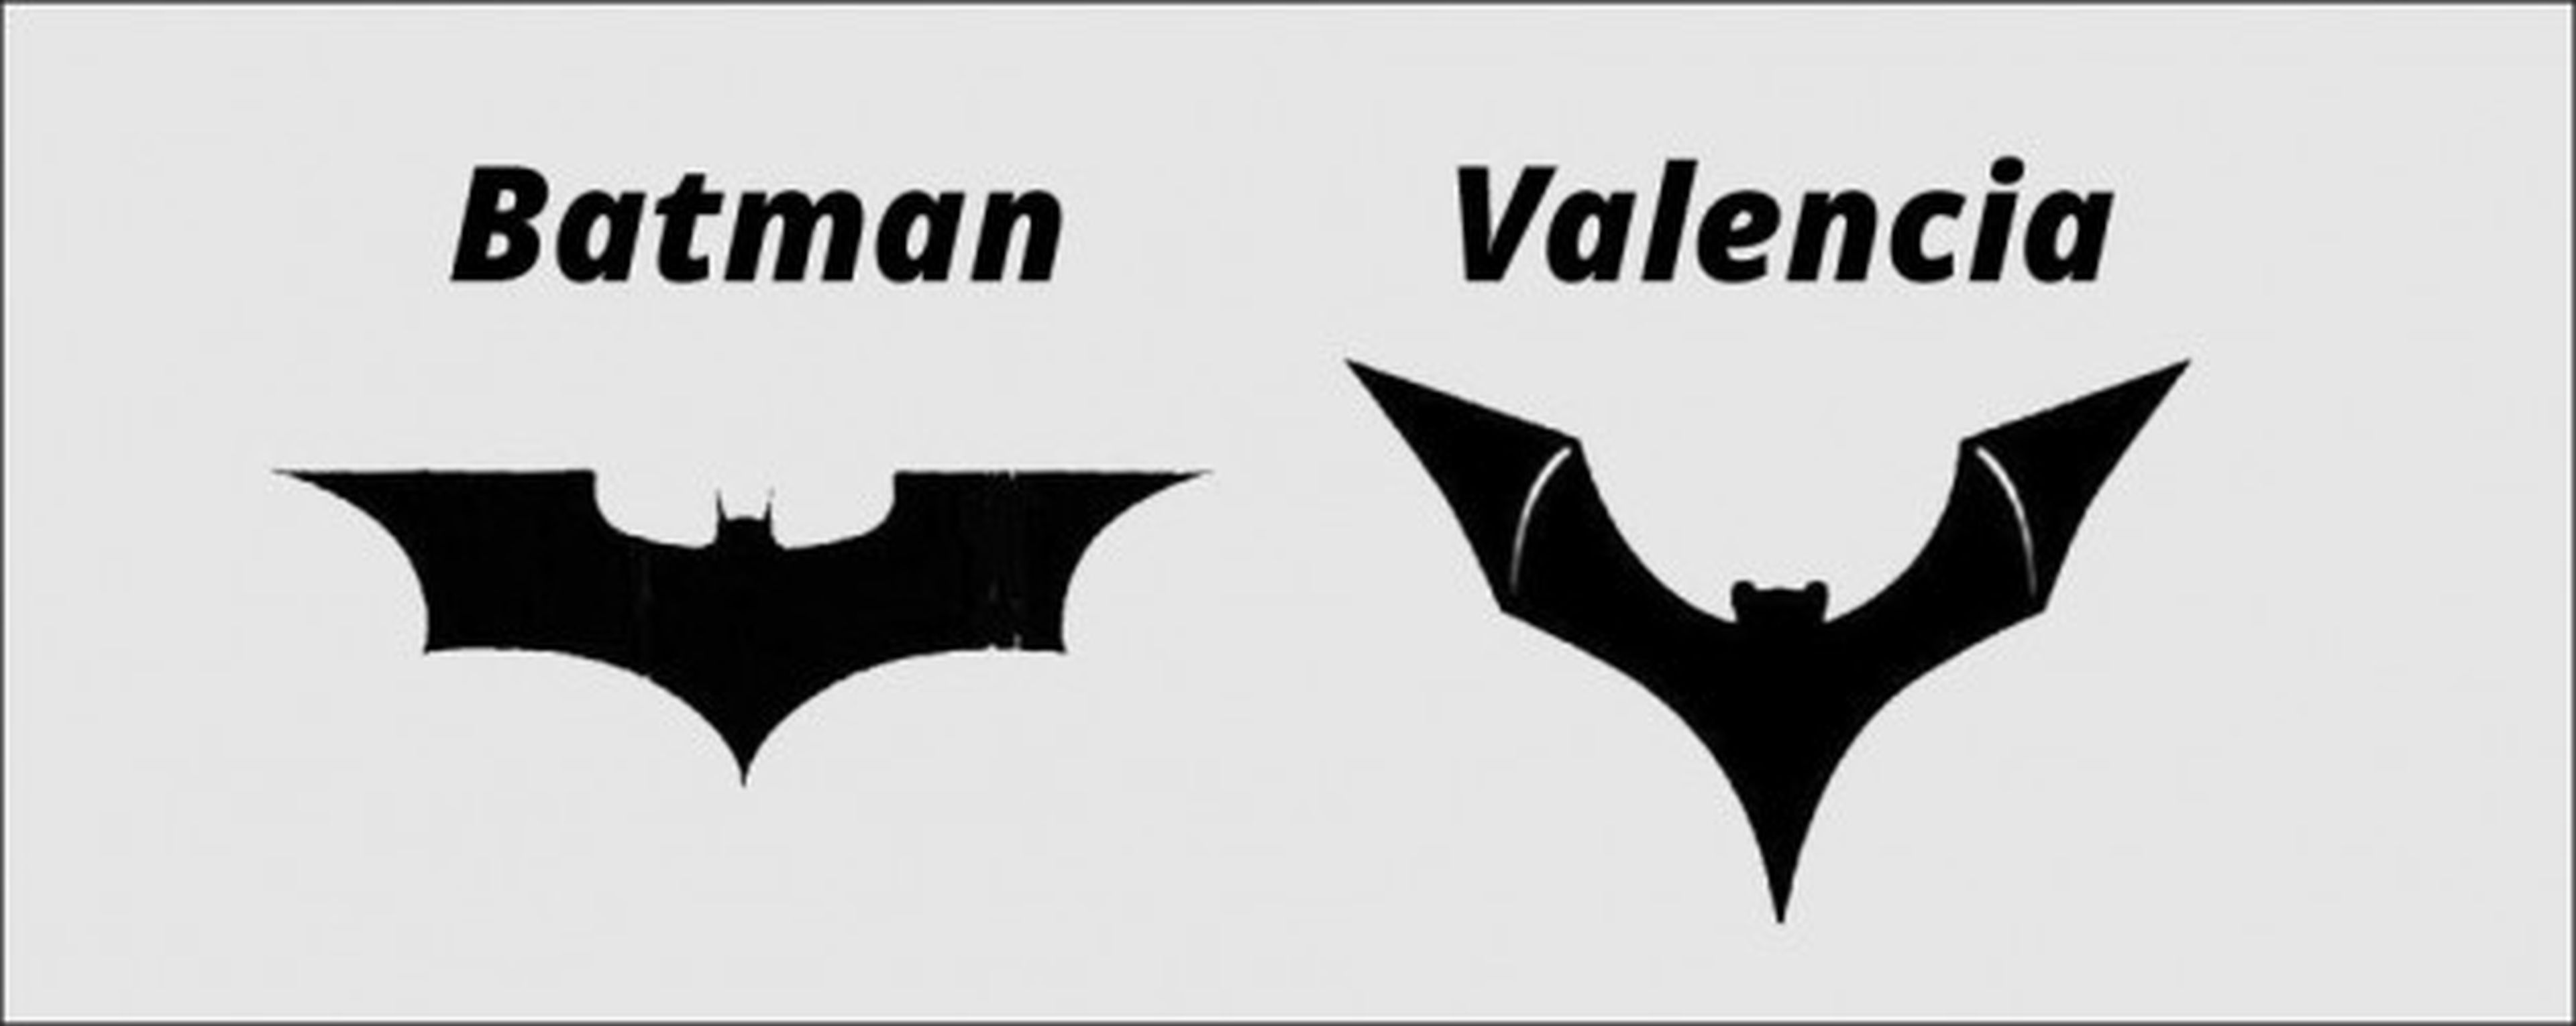 DC Comics demanda al Valencia C.F. por el logo de Batman